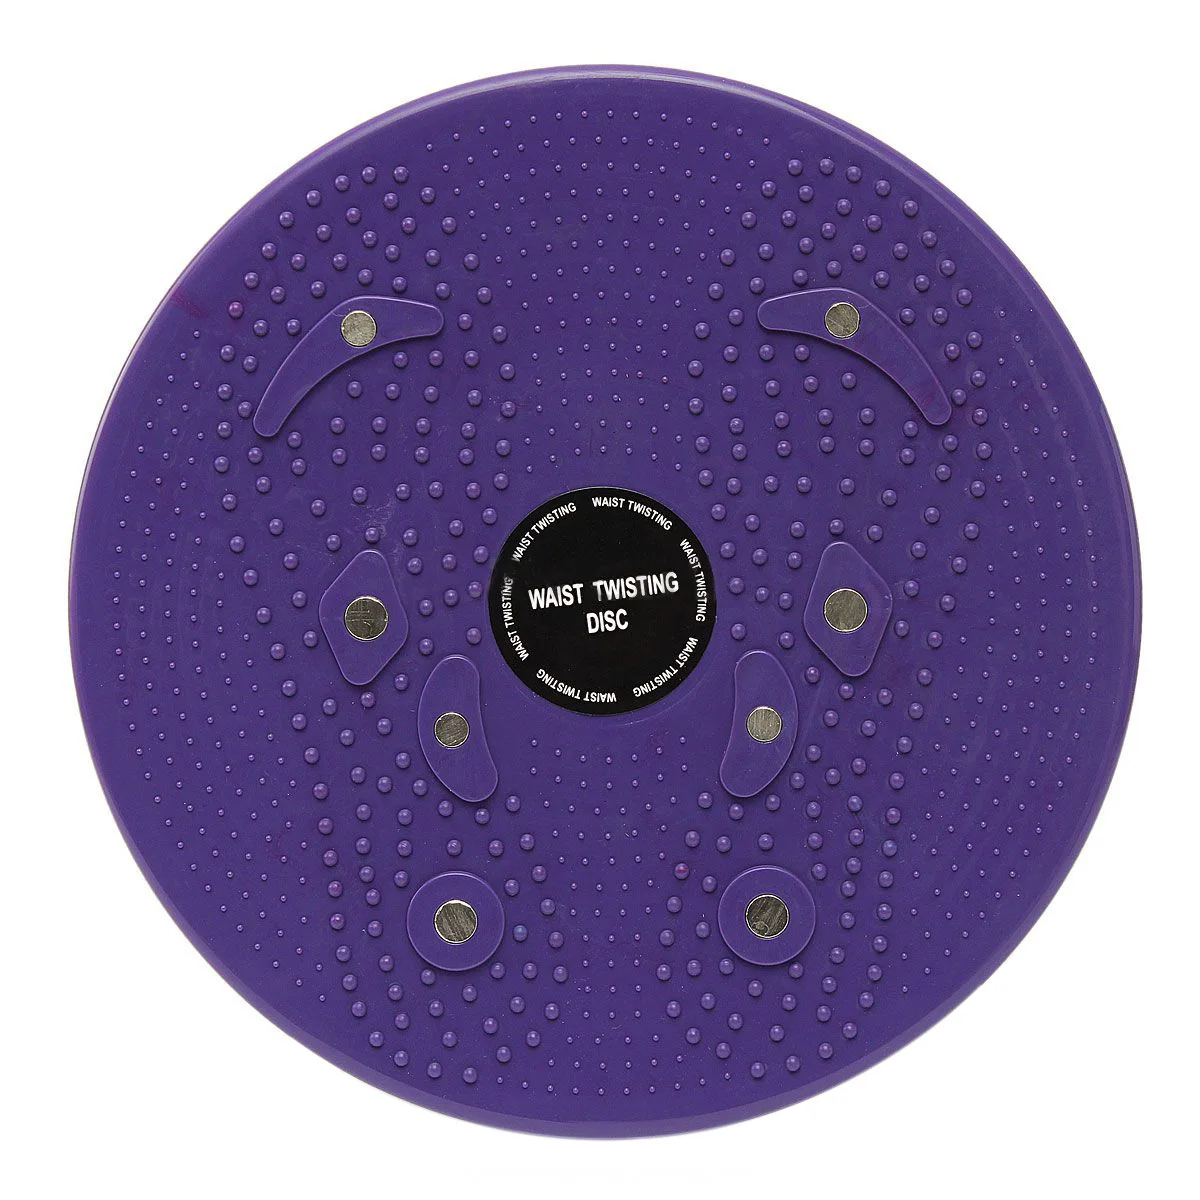 Твист талии кручения диск доска аэробные упражнения фитнес рефлексотерапевтические магниты фиолетовый - Цвет: Фиолетовый